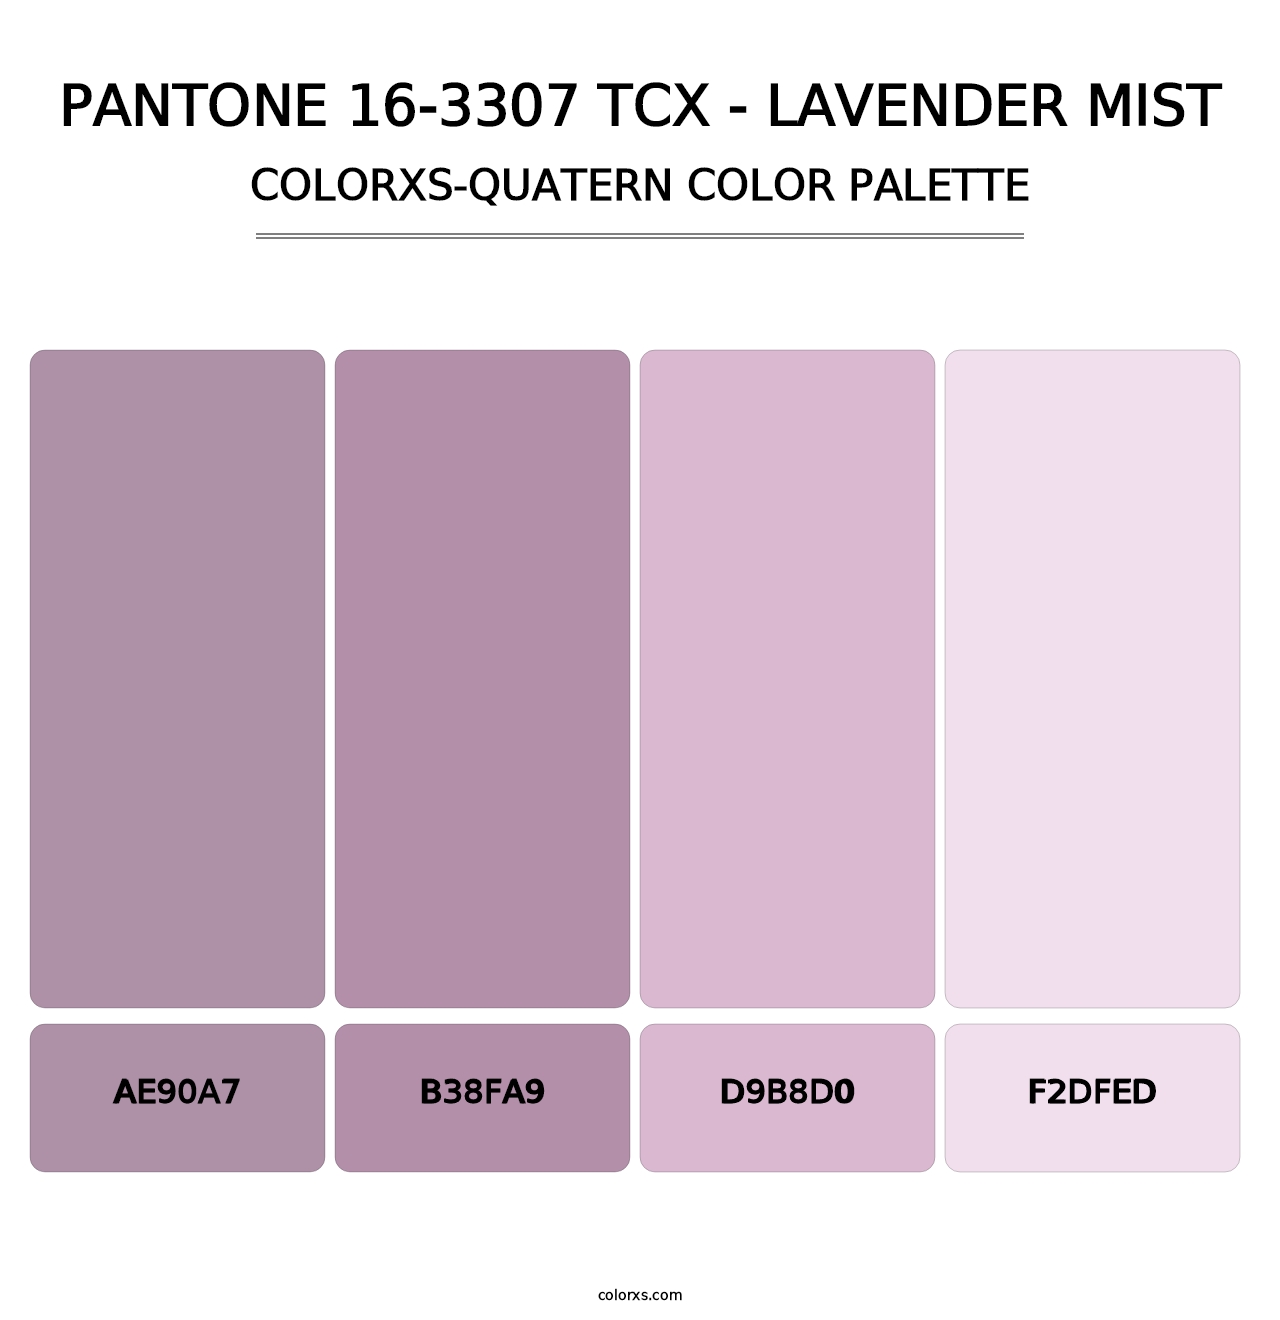 PANTONE 16-3307 TCX - Lavender Mist - Colorxs Quatern Palette